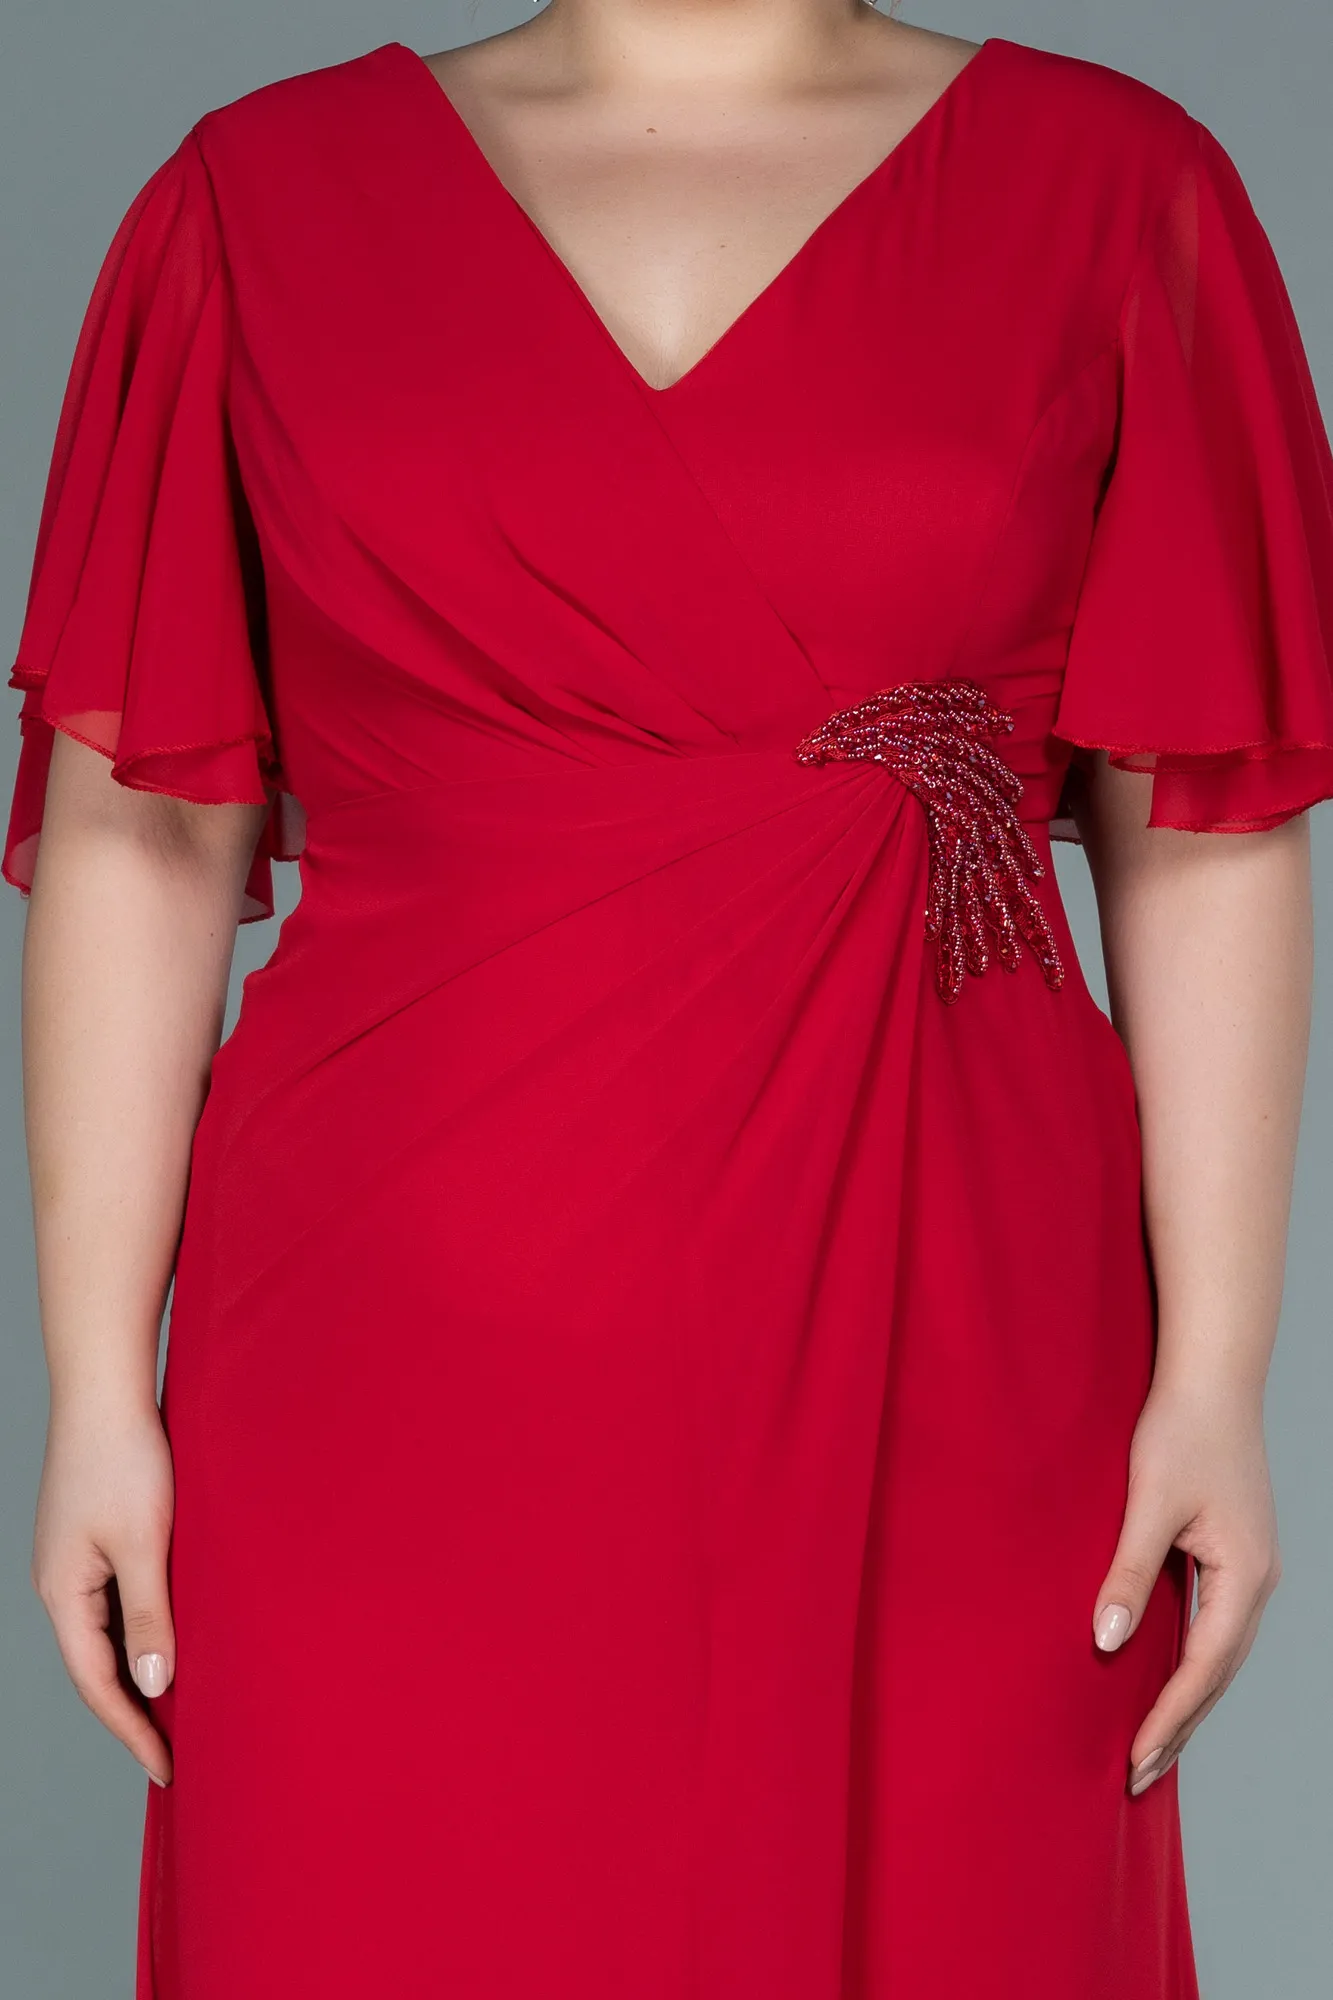 Red-Long Chiffon Oversized Evening Dress ABU2748